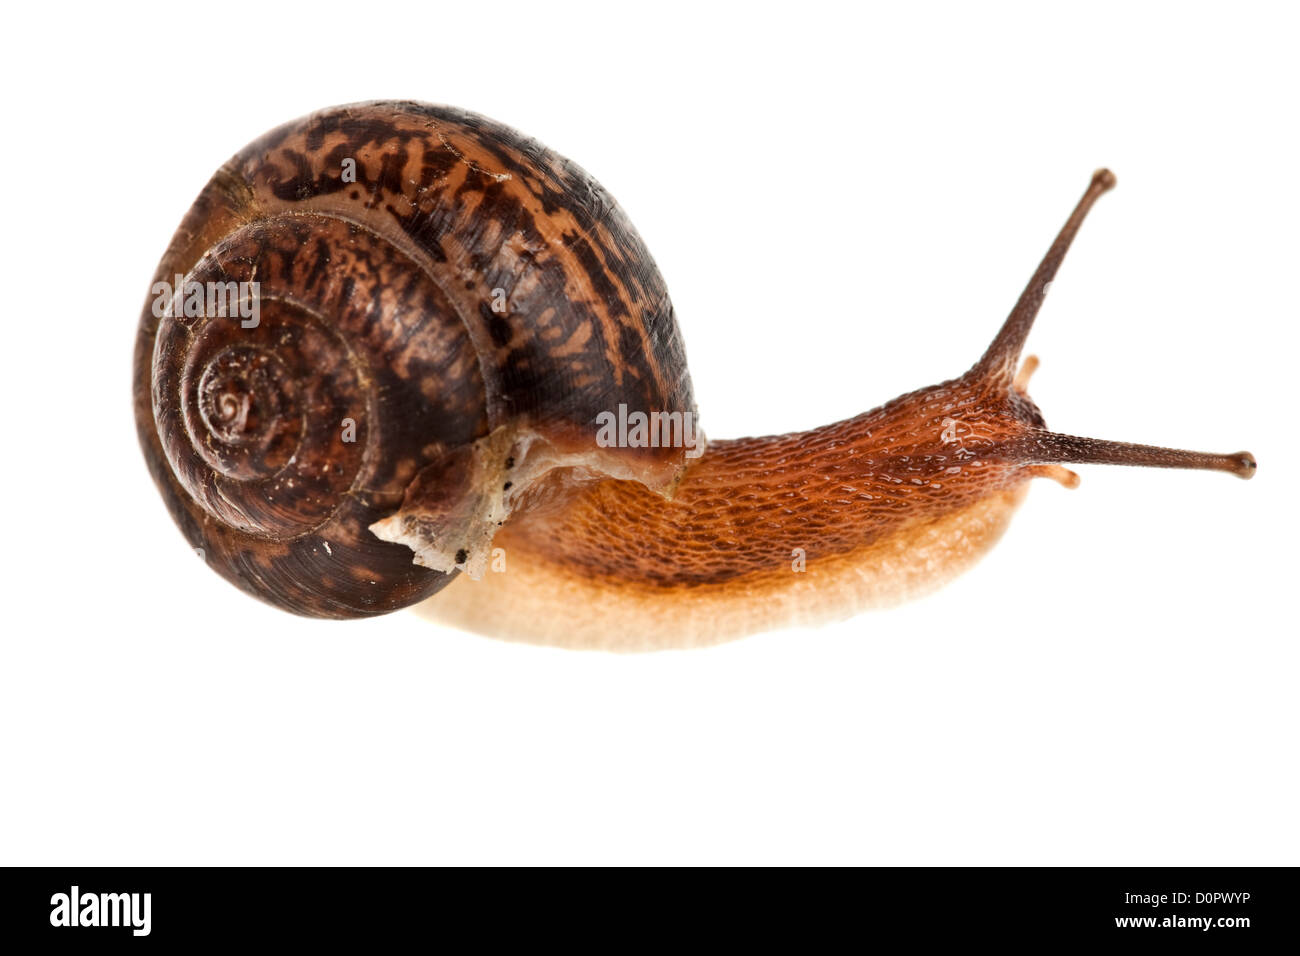 snail (edible snail) Stock Photo